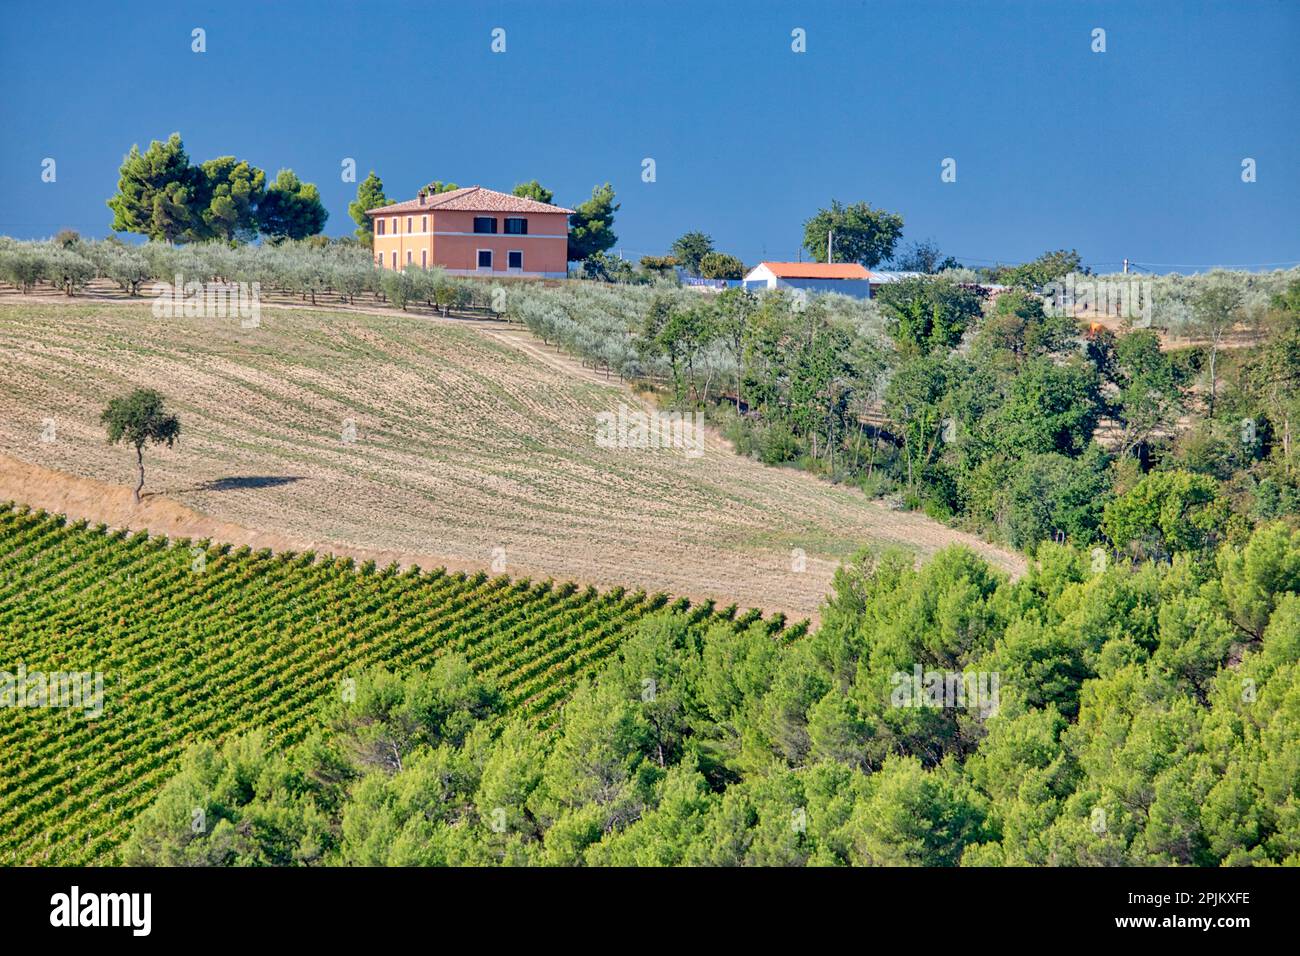 Italie, Ombrie. Maison entourée de vignes et d'oliviers près de la ville de Montefalco. (Usage éditorial uniquement) Banque D'Images